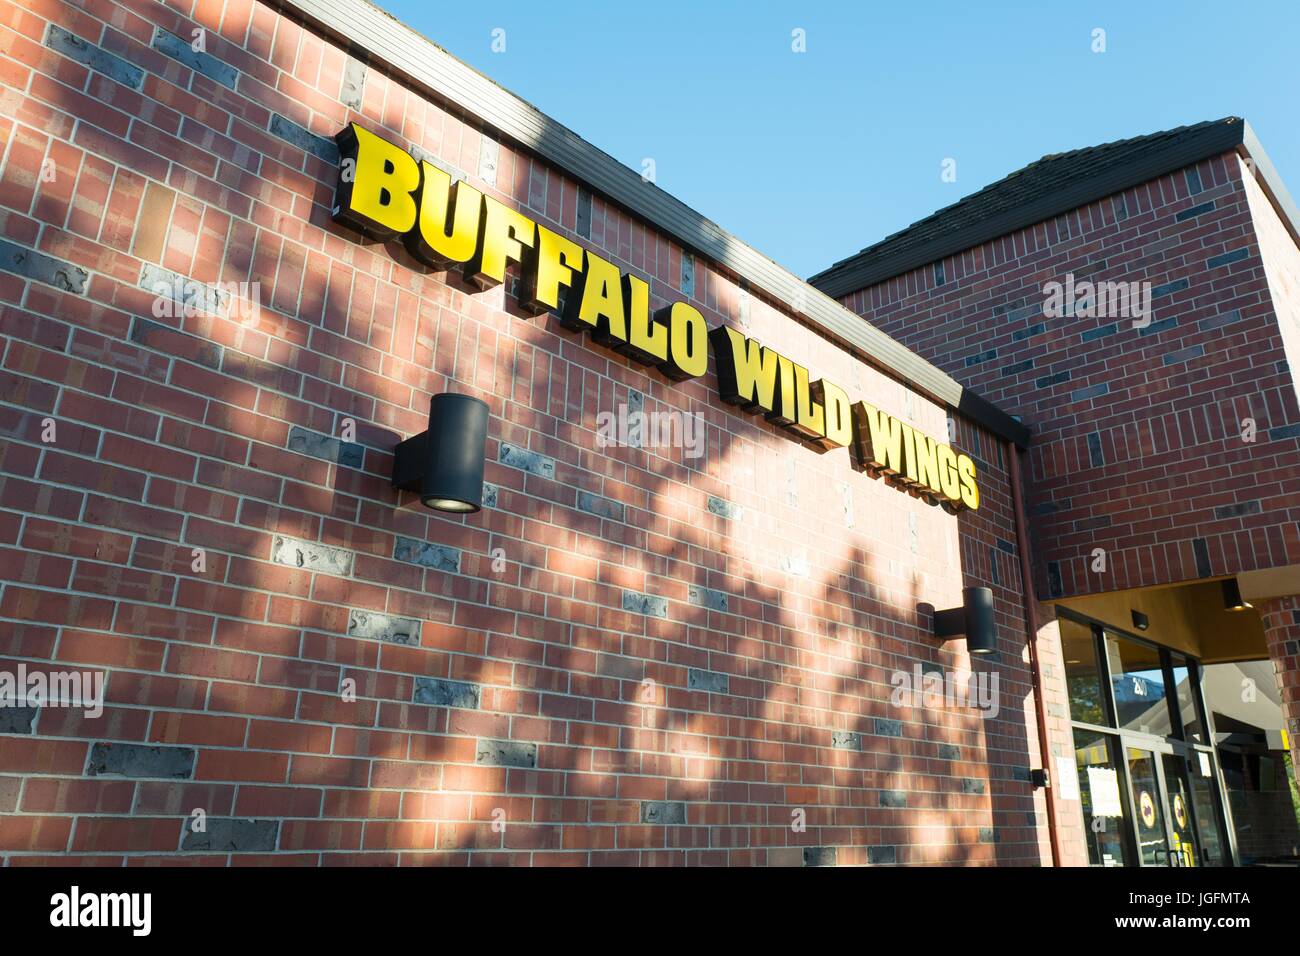 Beschilderung für Buffalo Wild Wings, Breitensport Bar und Chicken wings Restaurant in der Innenstadt von San Ramon, Kalifornien, 15. Juni 2017. Stockfoto